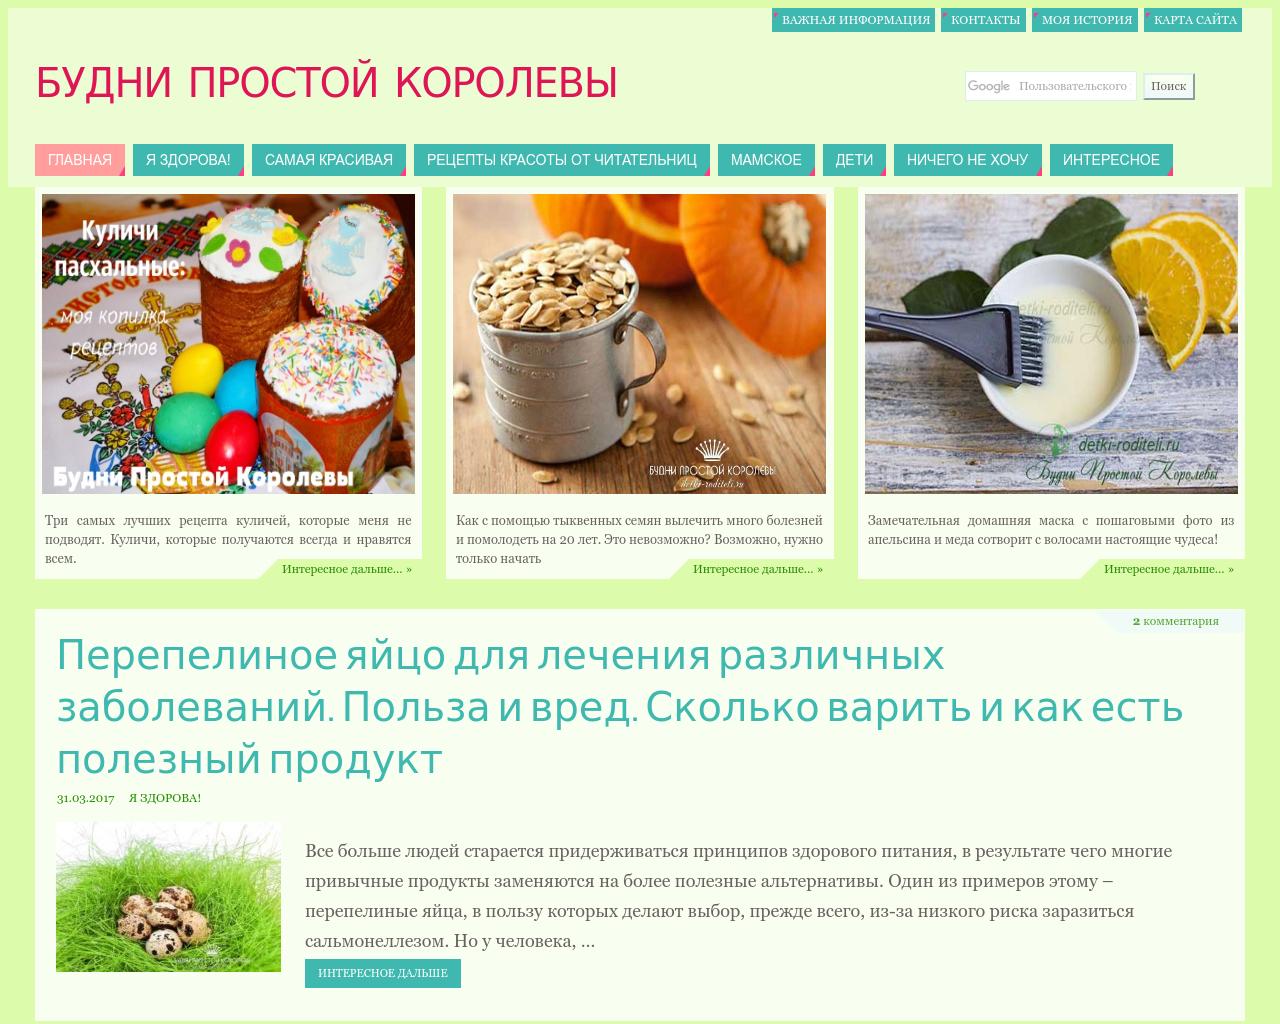 Изображение сайта detki-roditeli.ru в разрешении 1280x1024